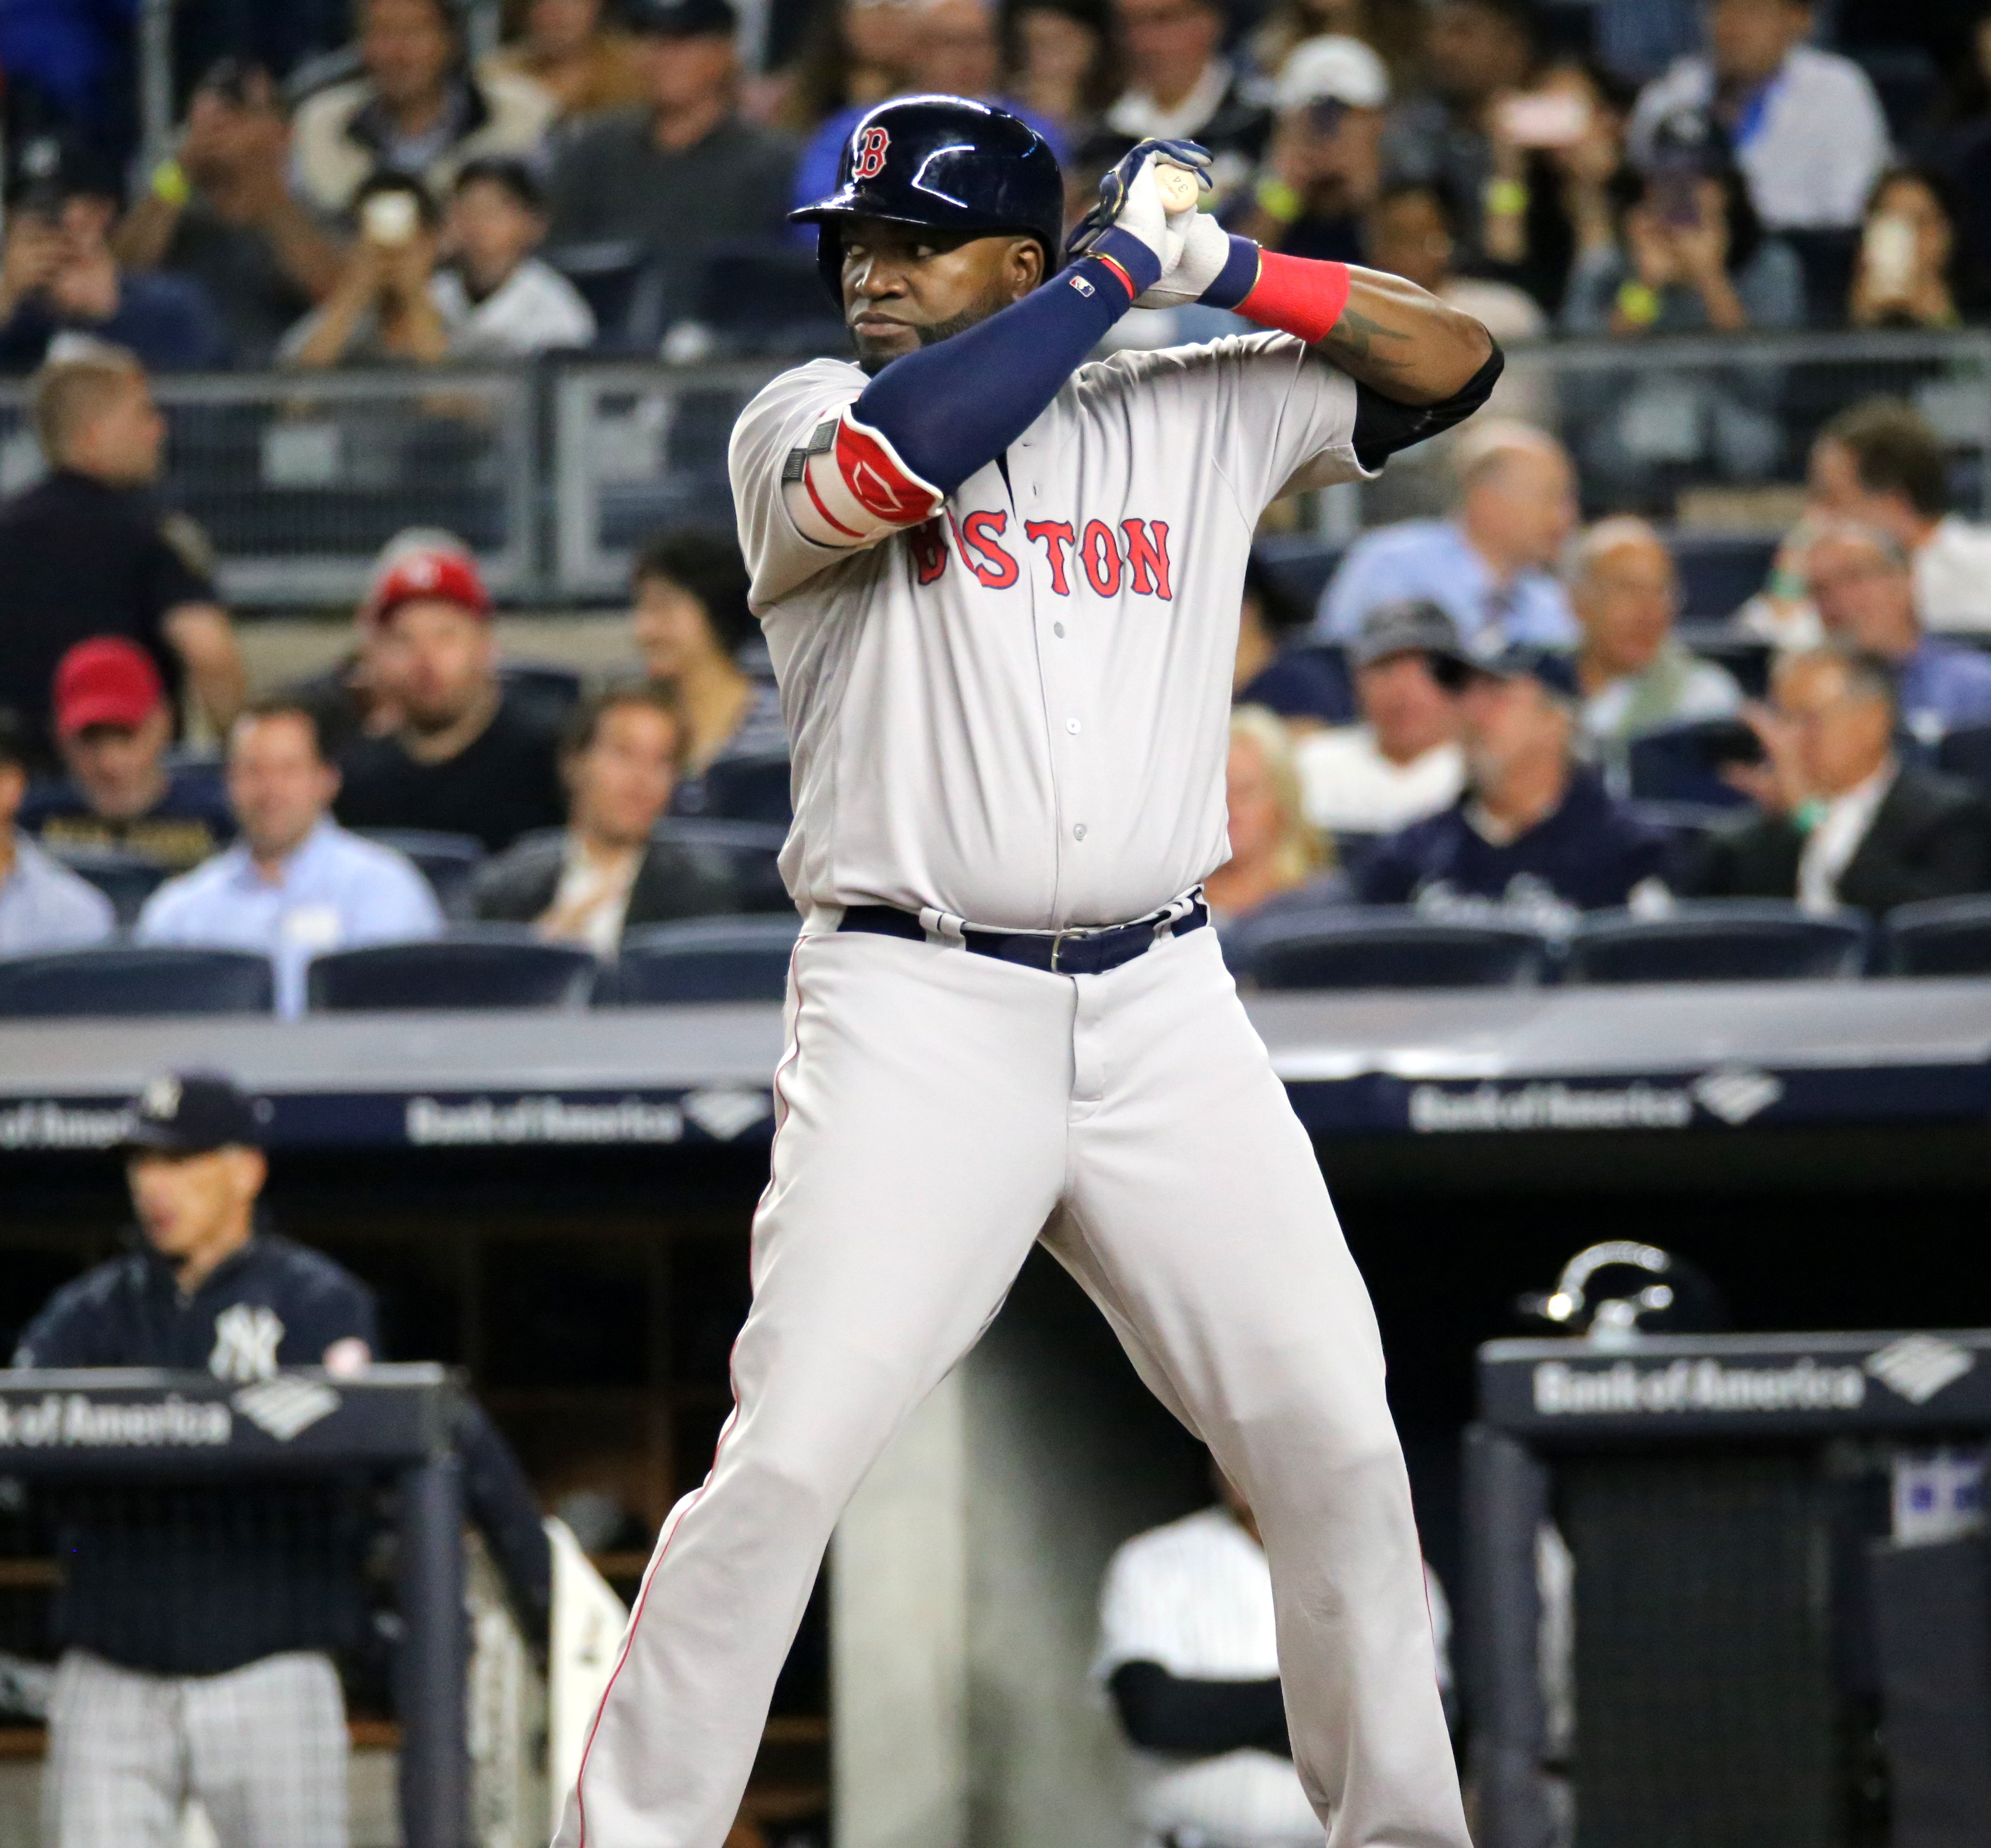 File:David Ortiz batting in game against Yankees 09-27-16 (37